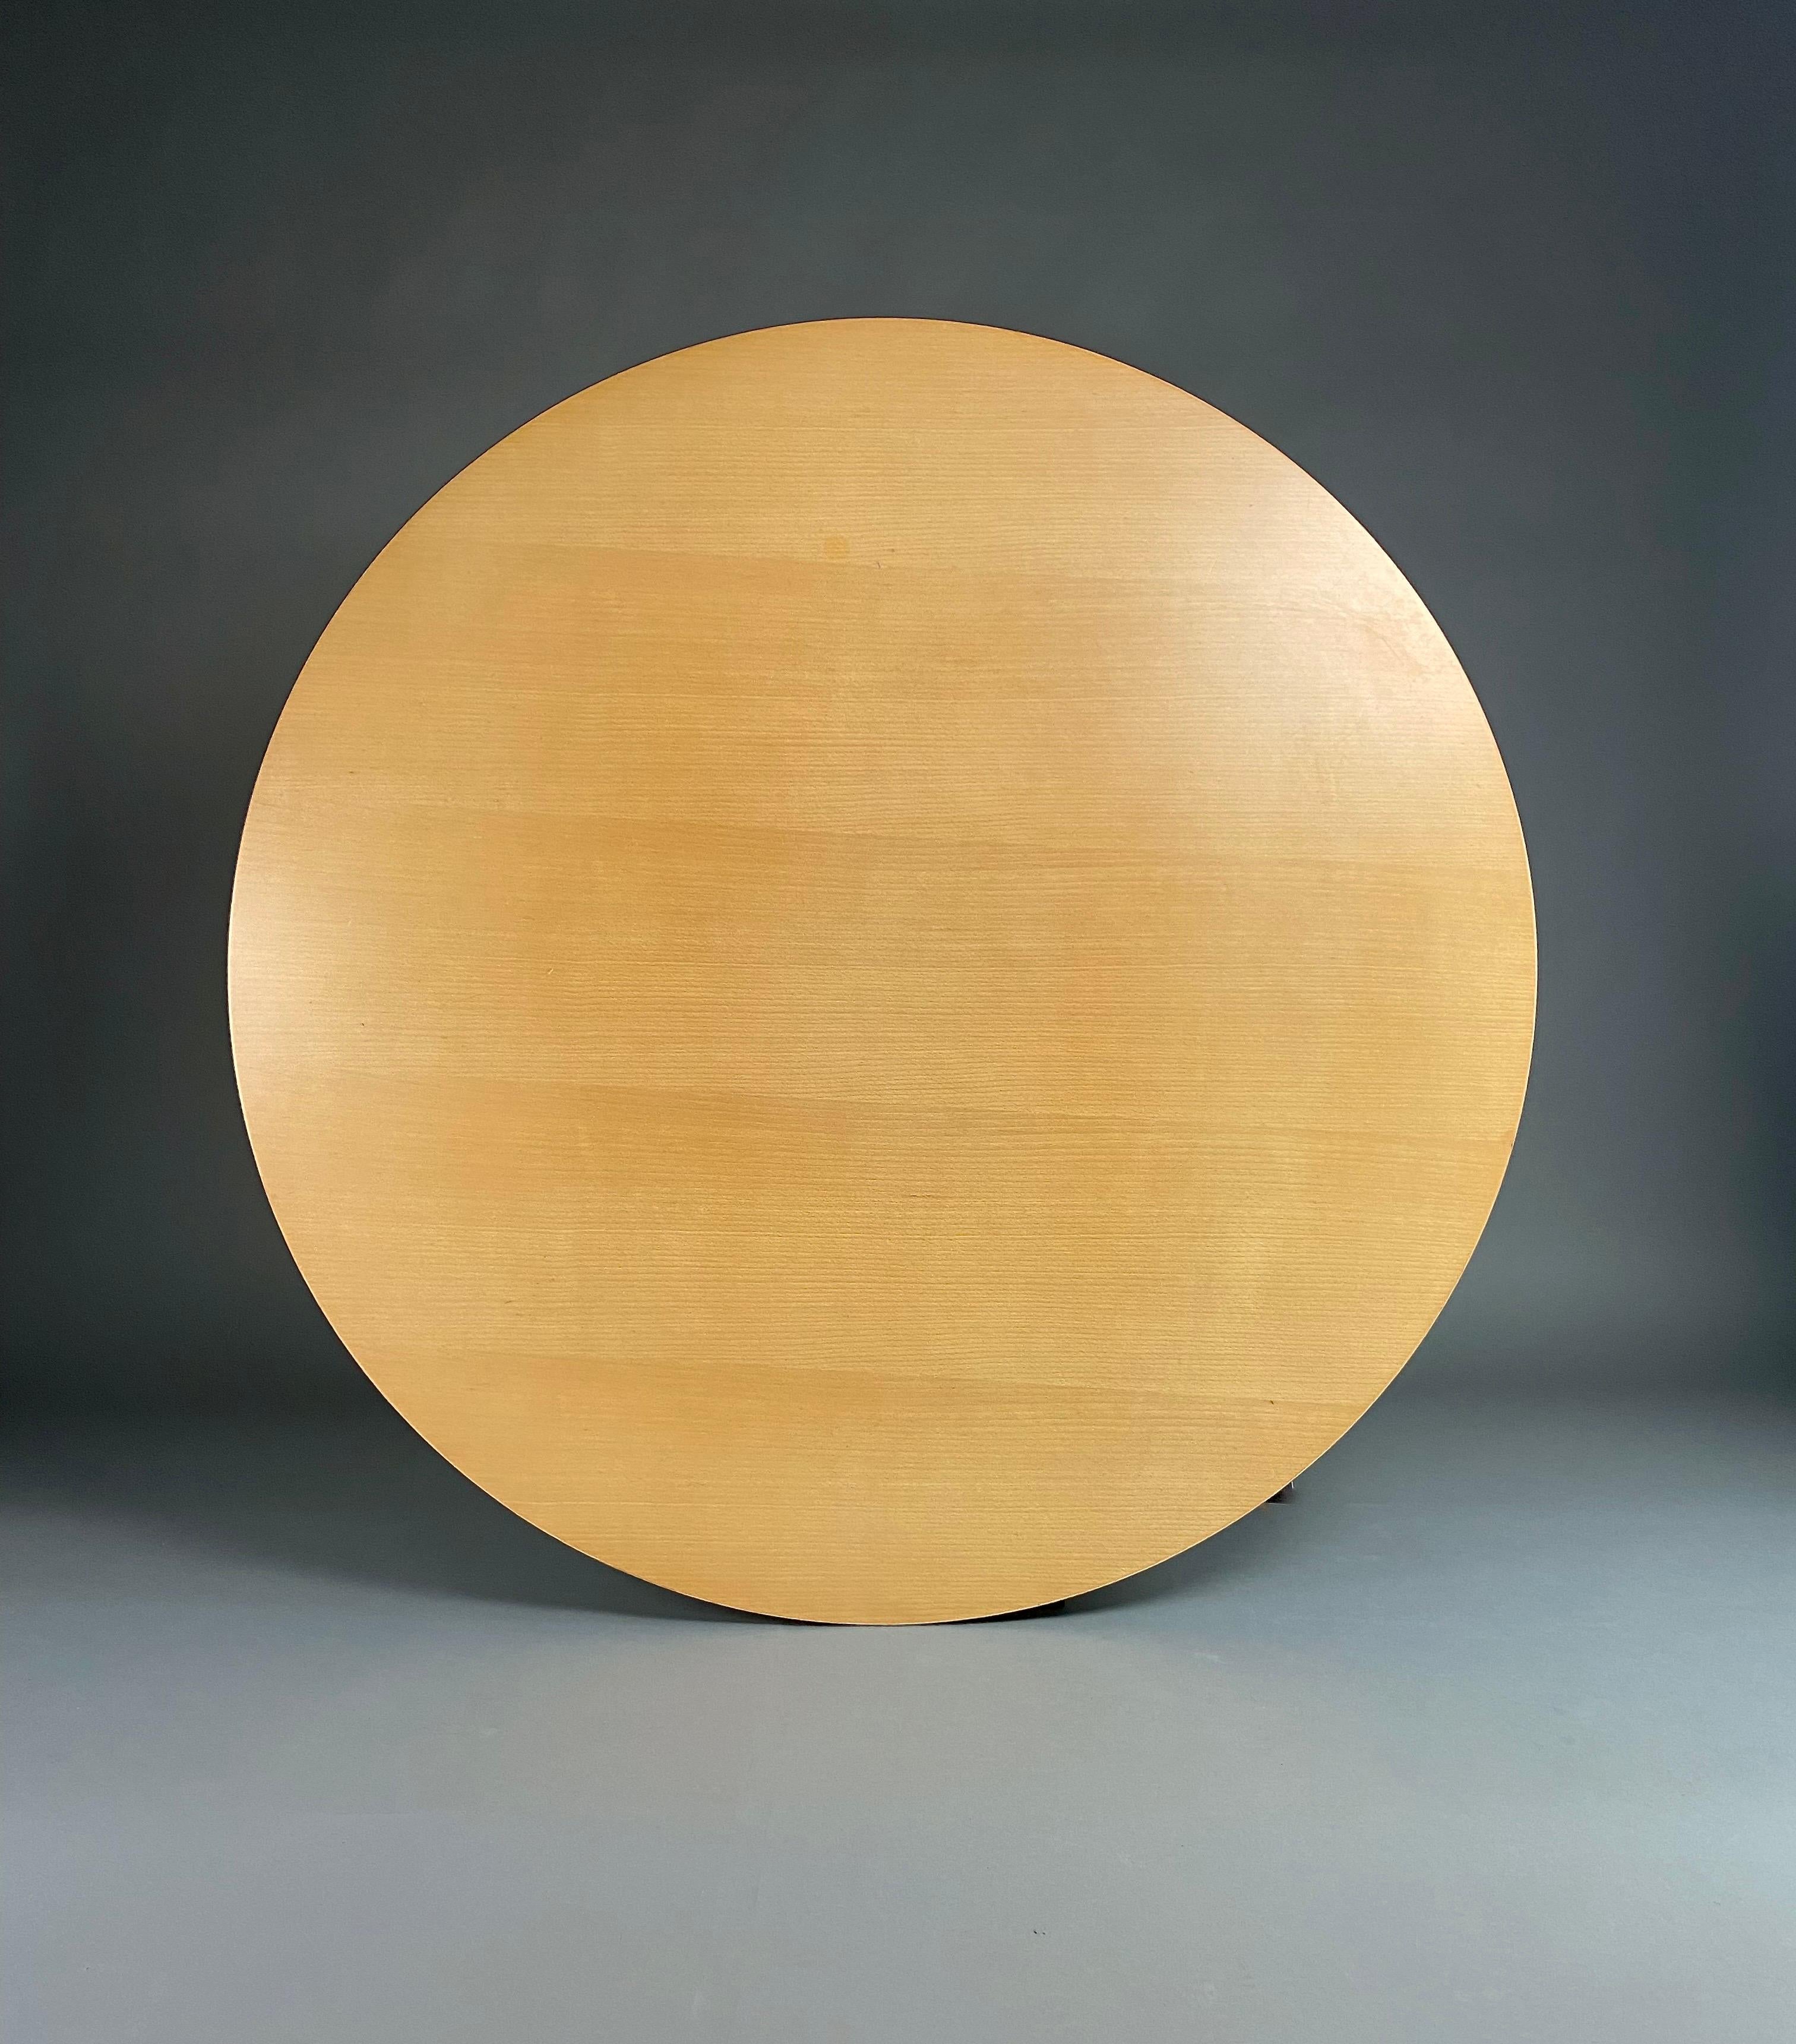 Voici le summum de l'élégance et du design intemporel : la table de salle à manger circulaire en bois de hêtre modèle A825 d'Arne Jacobsen pour Fritz Hansen, un véritable chef-d'œuvre qui orne les salles à manger depuis 1968.

Améliorez votre